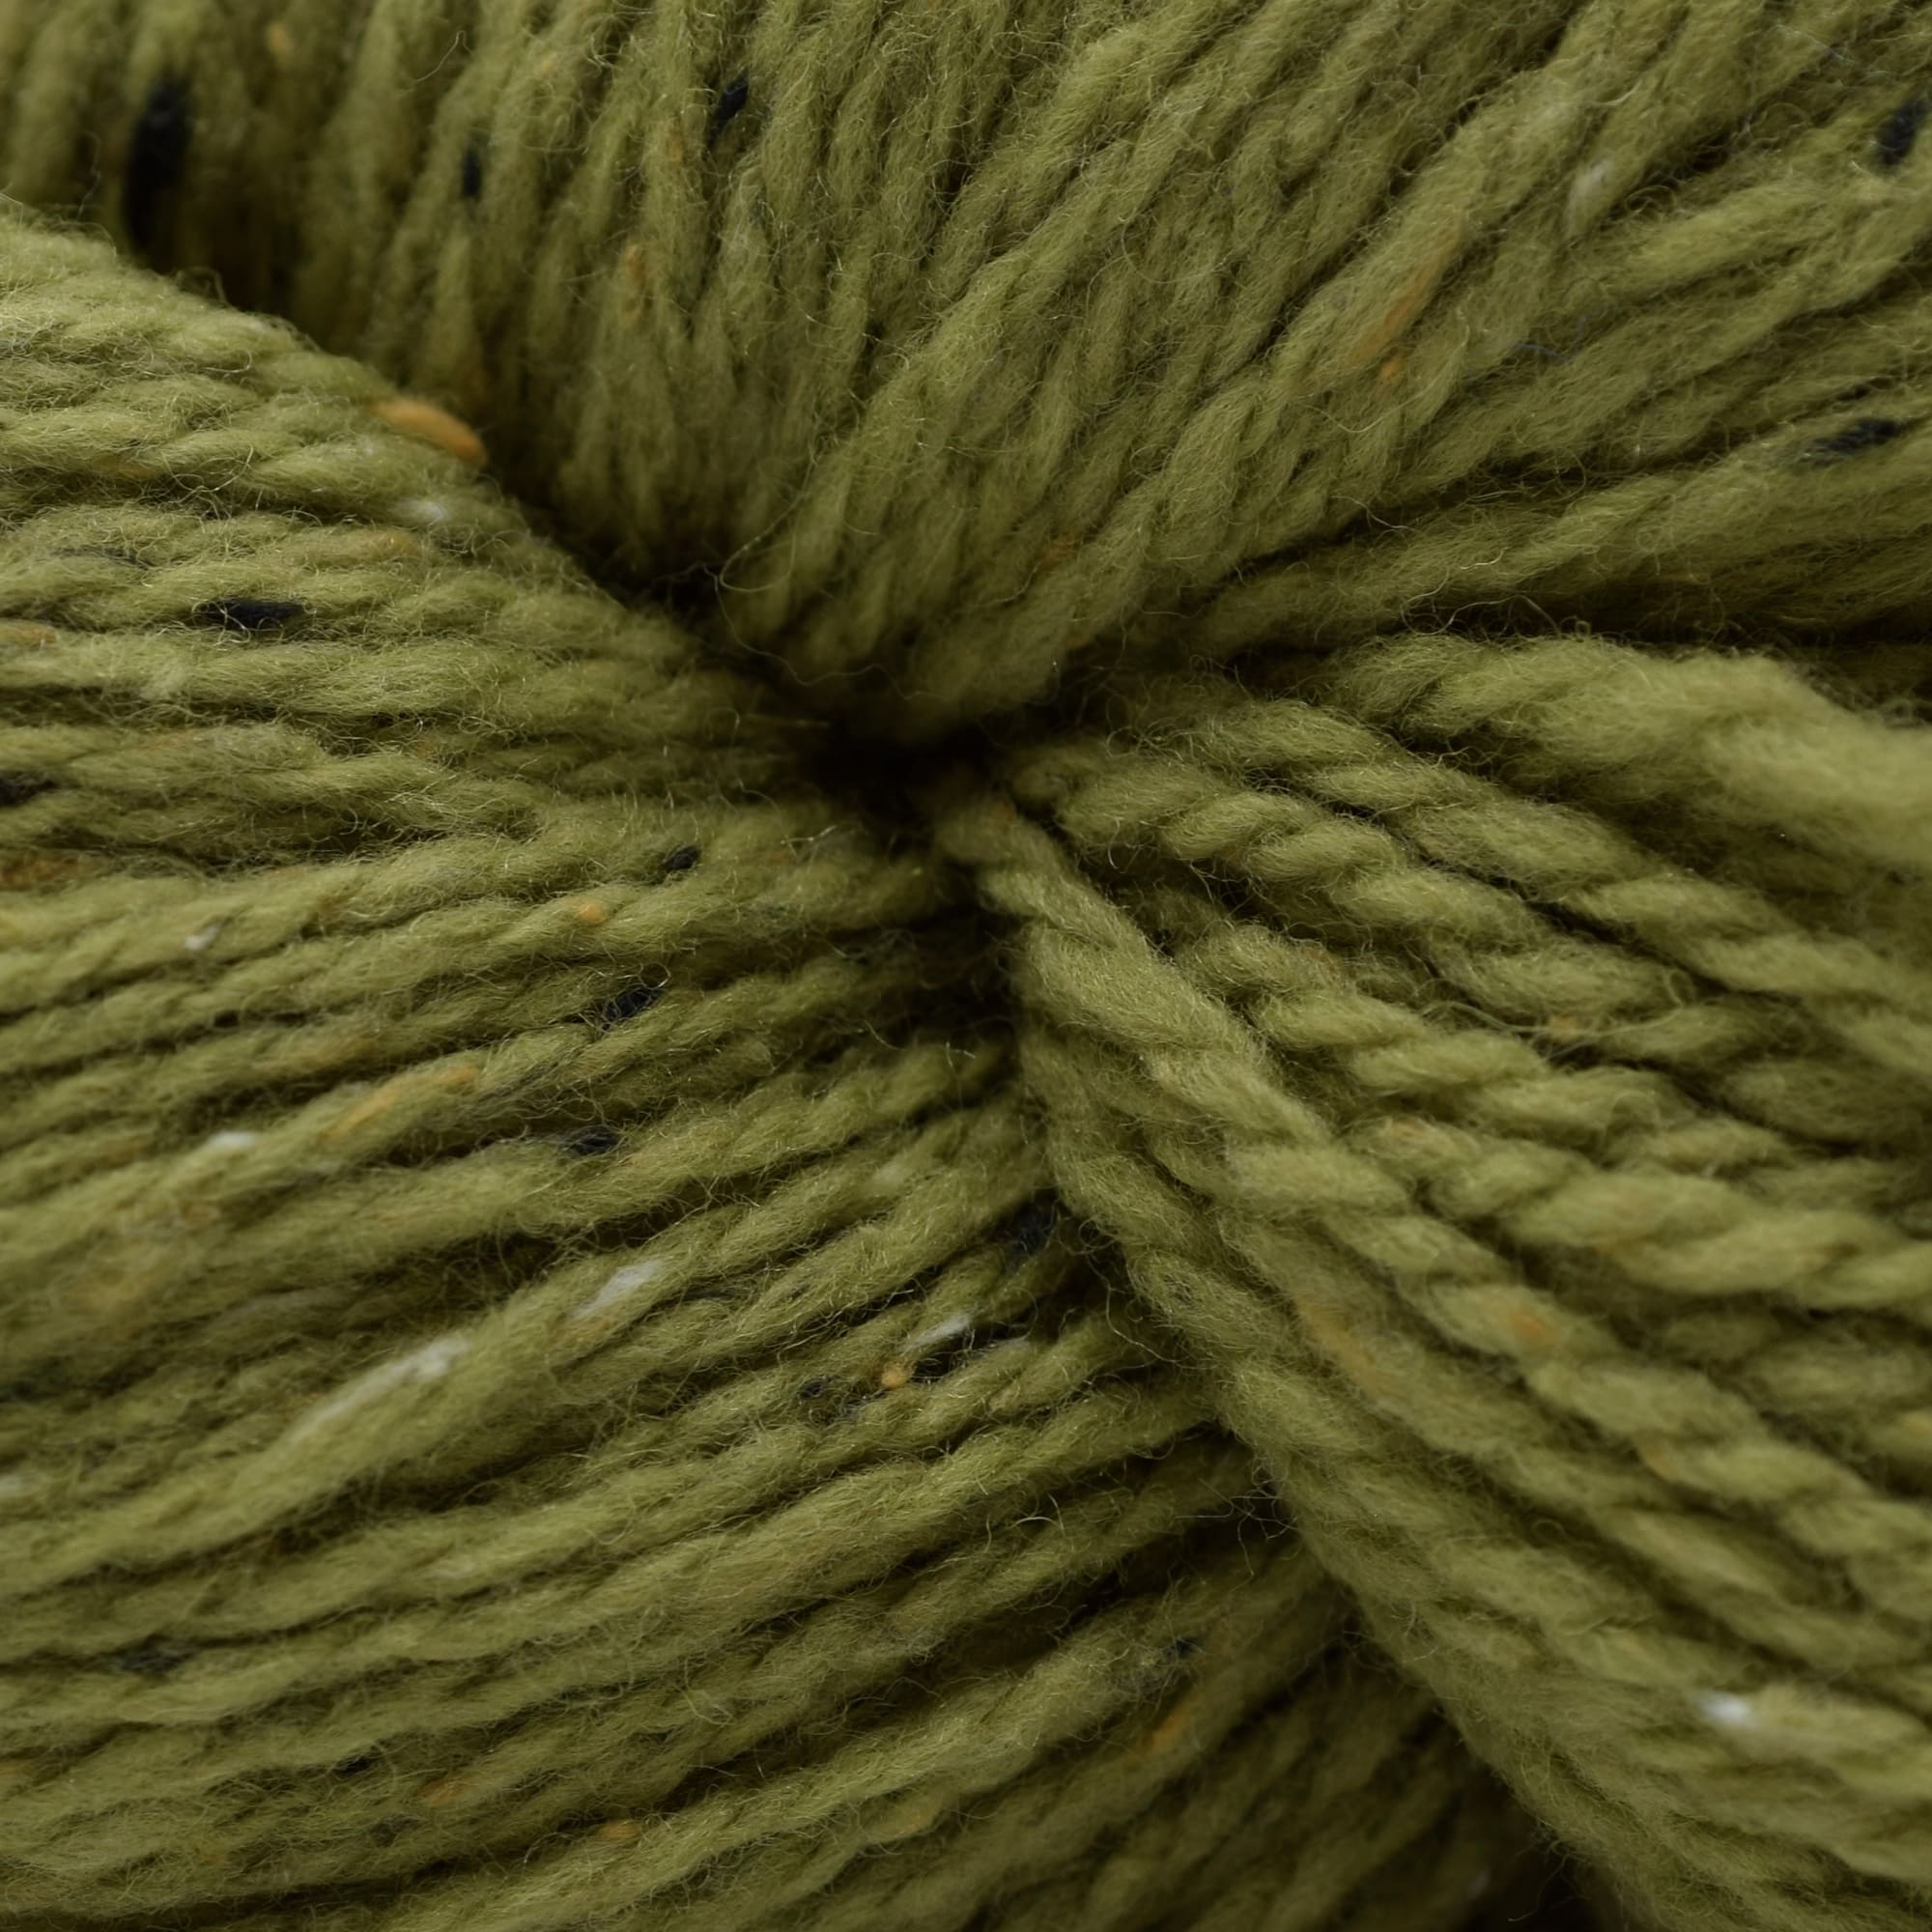 Ellana Wool Thread EN21 Rhubarb - 70 yd